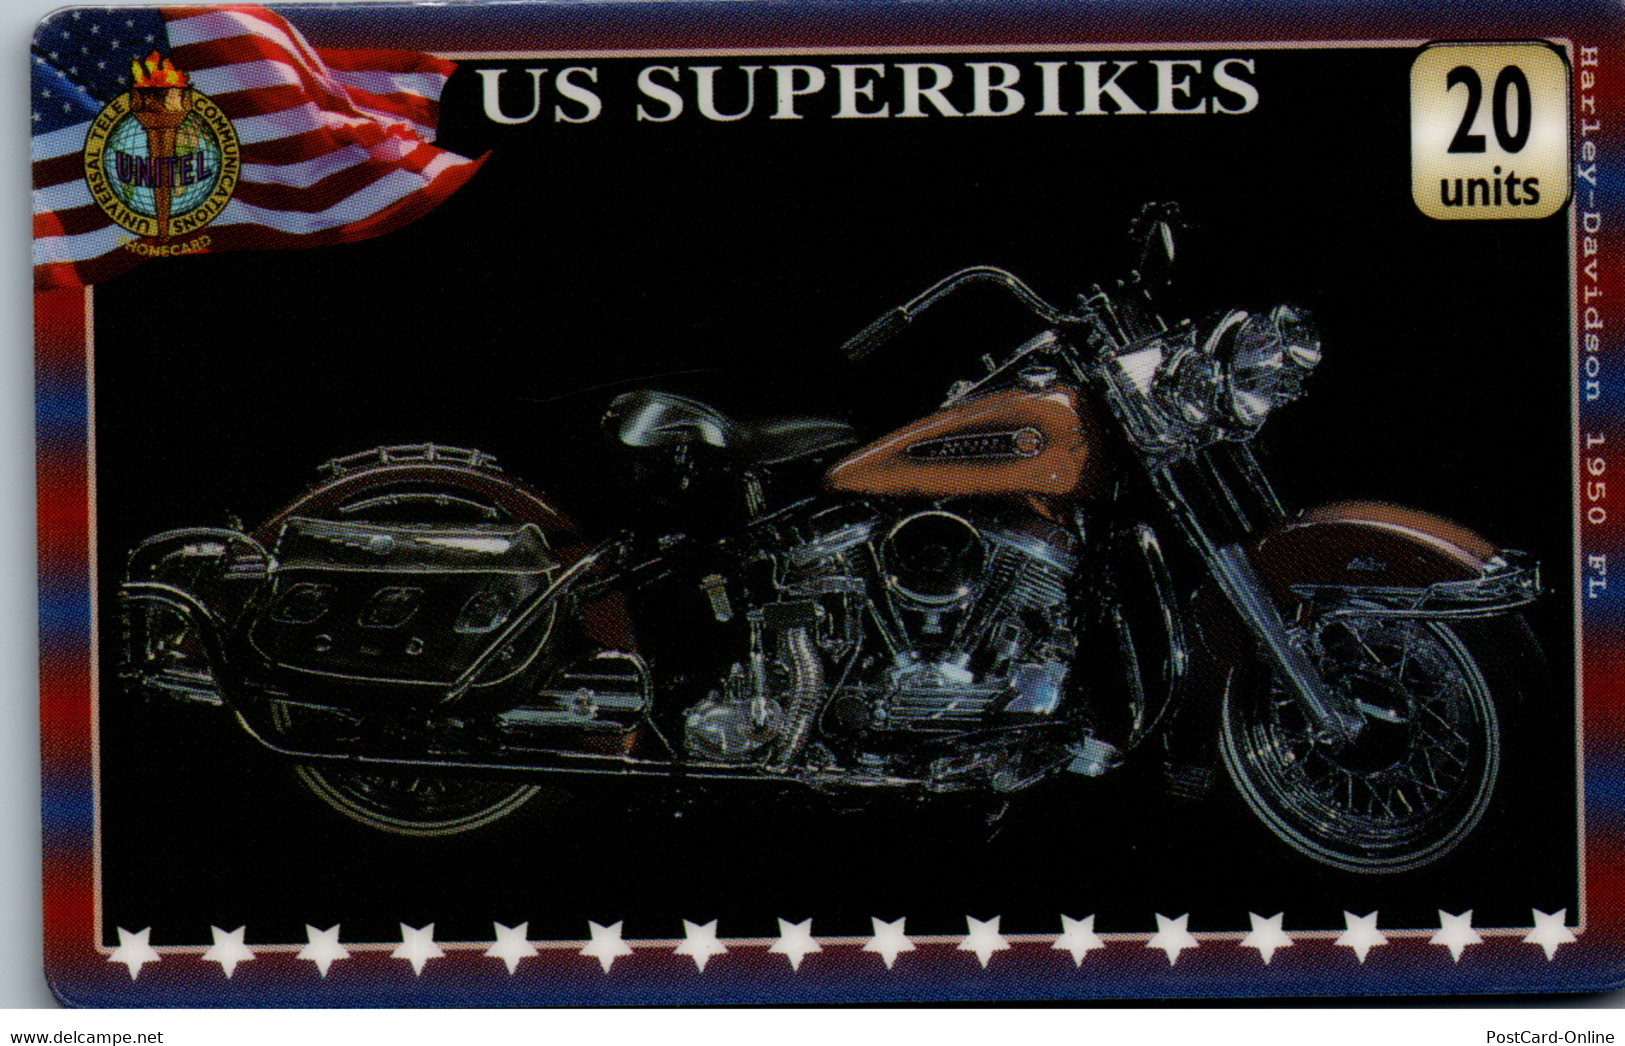 20333 - Großbritannien - UniTel , US Superbikes , Harley Davidson - BT Cartes Mondiales (Prépayées)